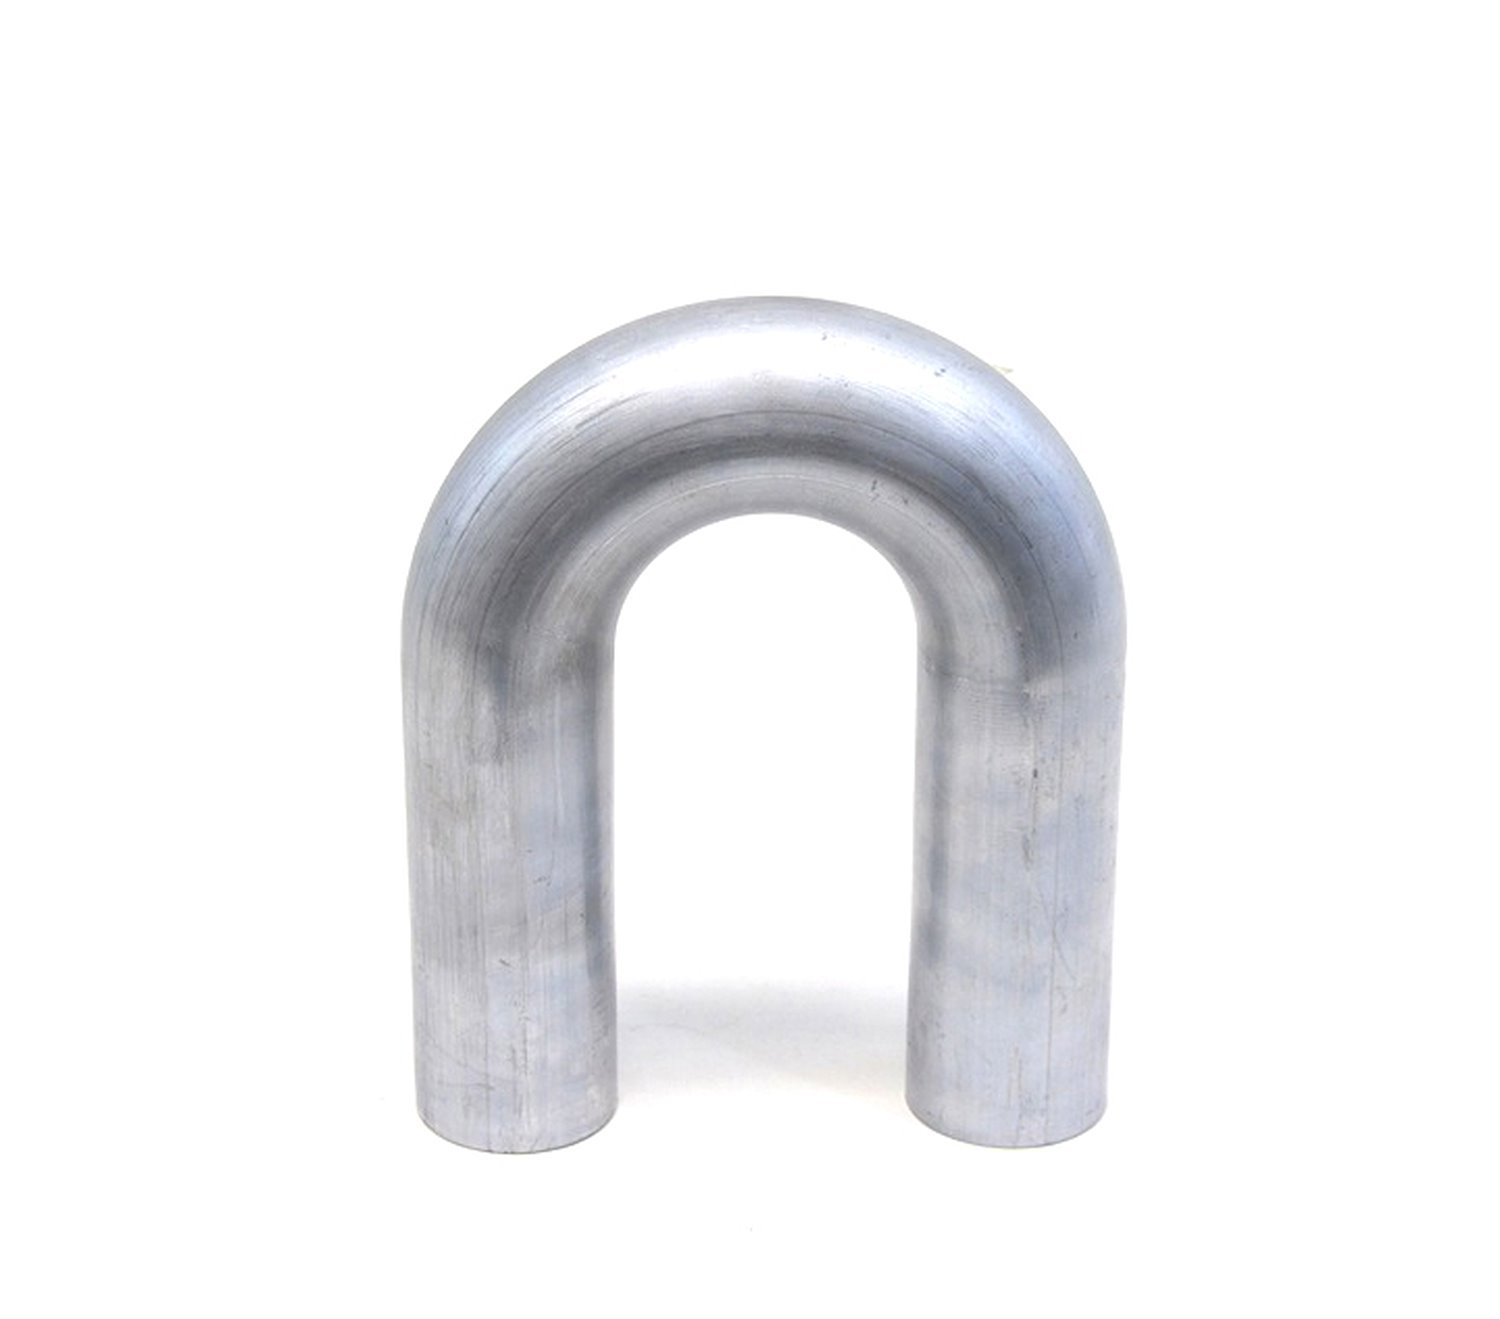 AT180-075-CLR-15 Aluminum Elbow Tube, 6061 Aluminum, 180-Degree U Bend Elbow Tubing, 3/4 in. OD, Tight Radius, 1-1/2 in. CLR